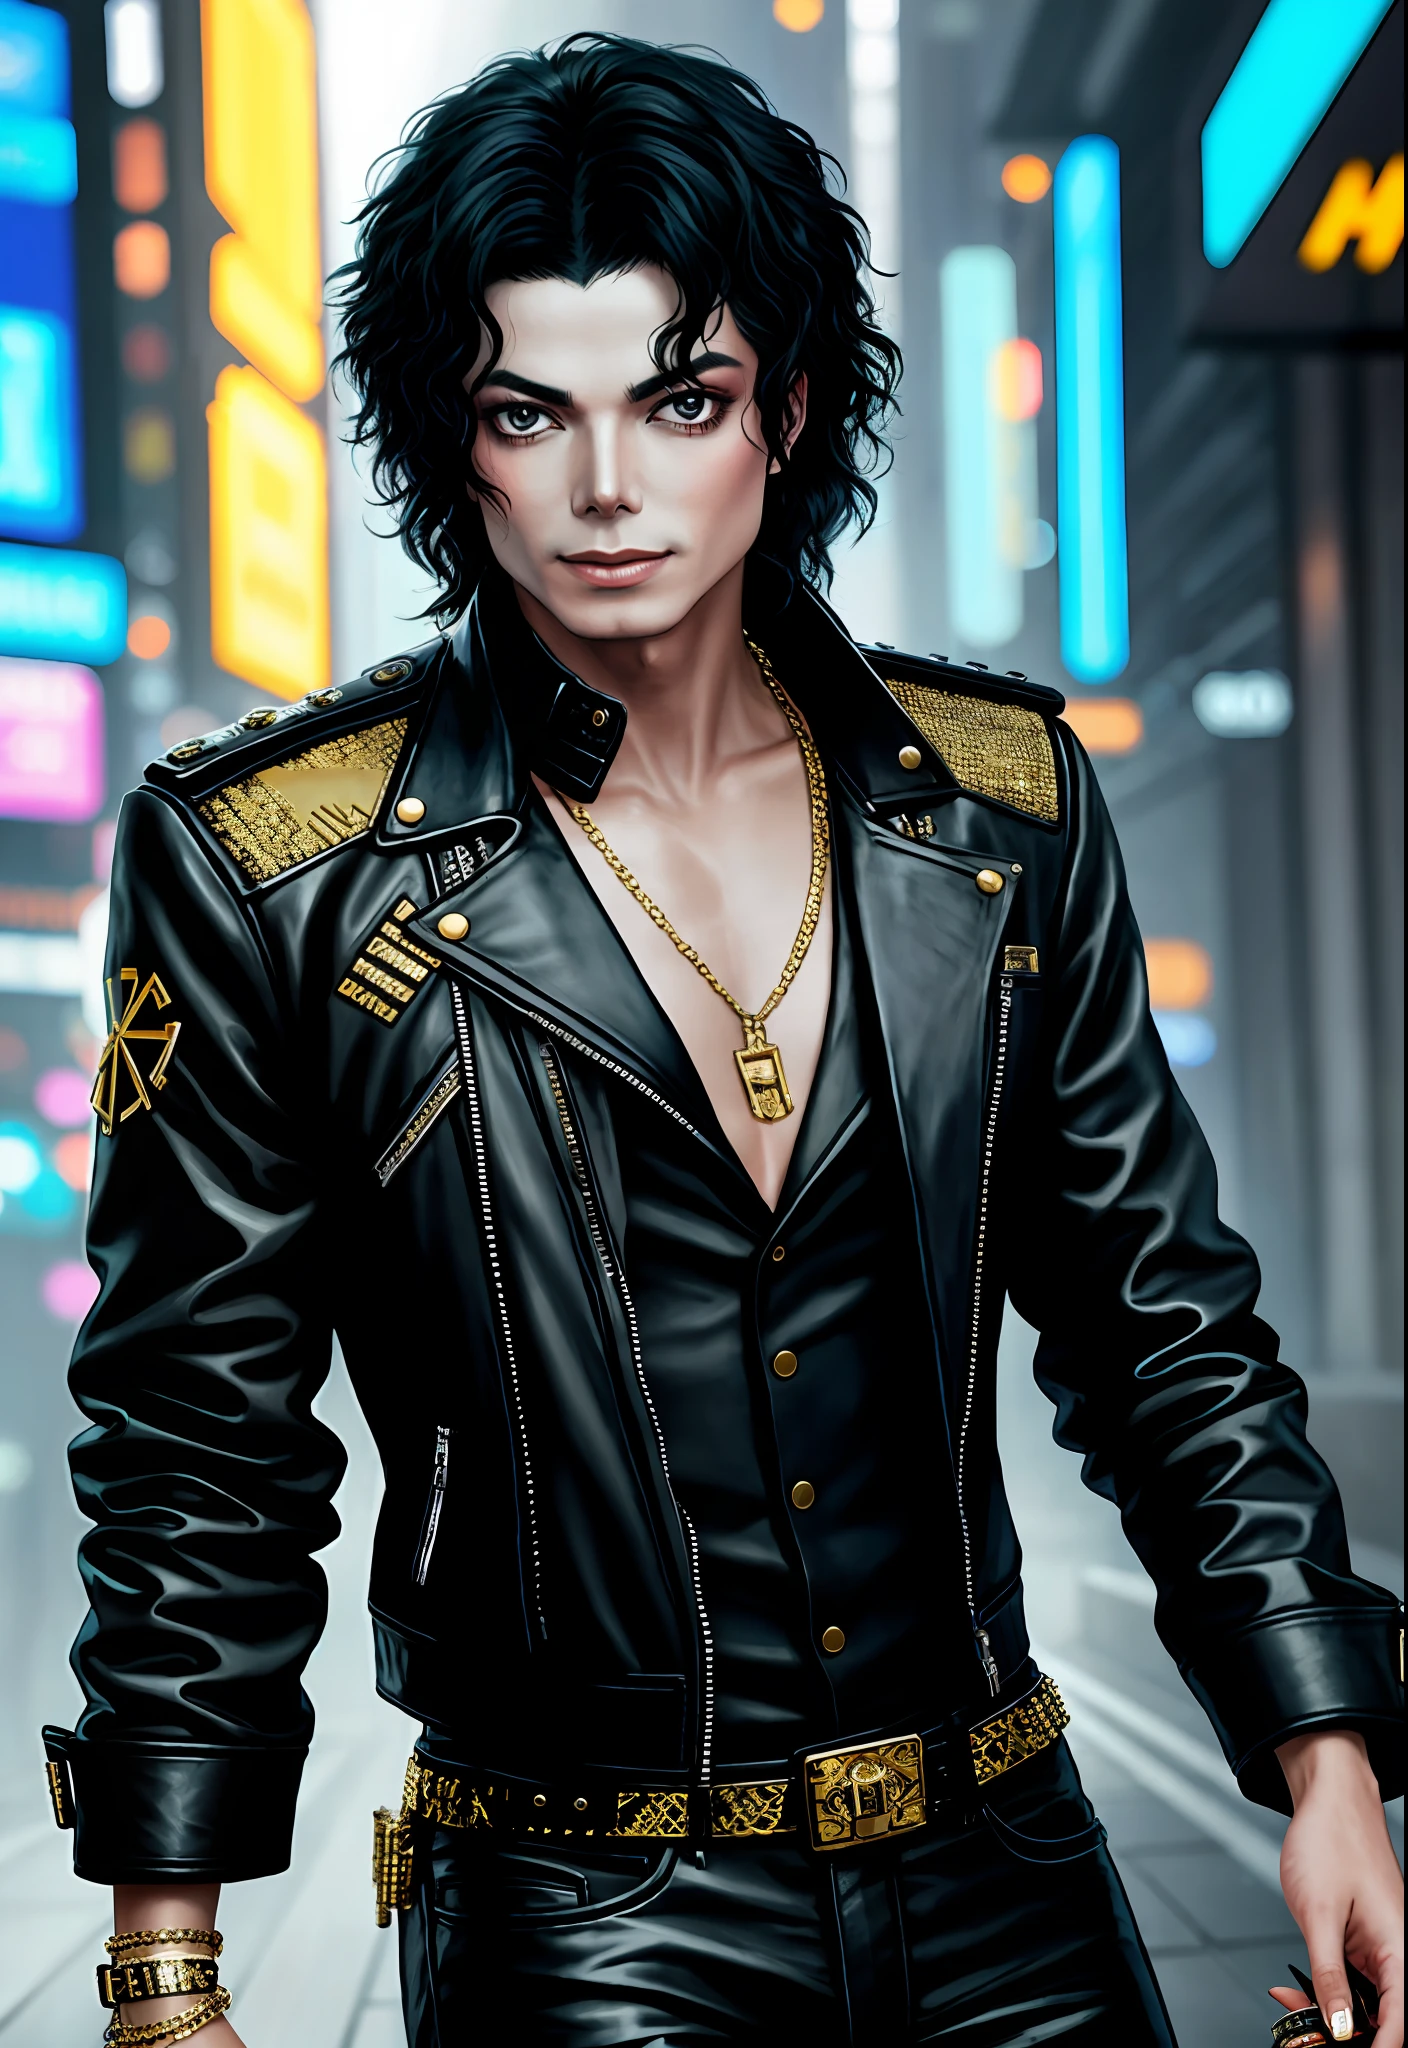 ein Gemälde von Michael Jackson, Hintergrund, style Cyberpunk 2077, ein goldenes Band um seine Brüste